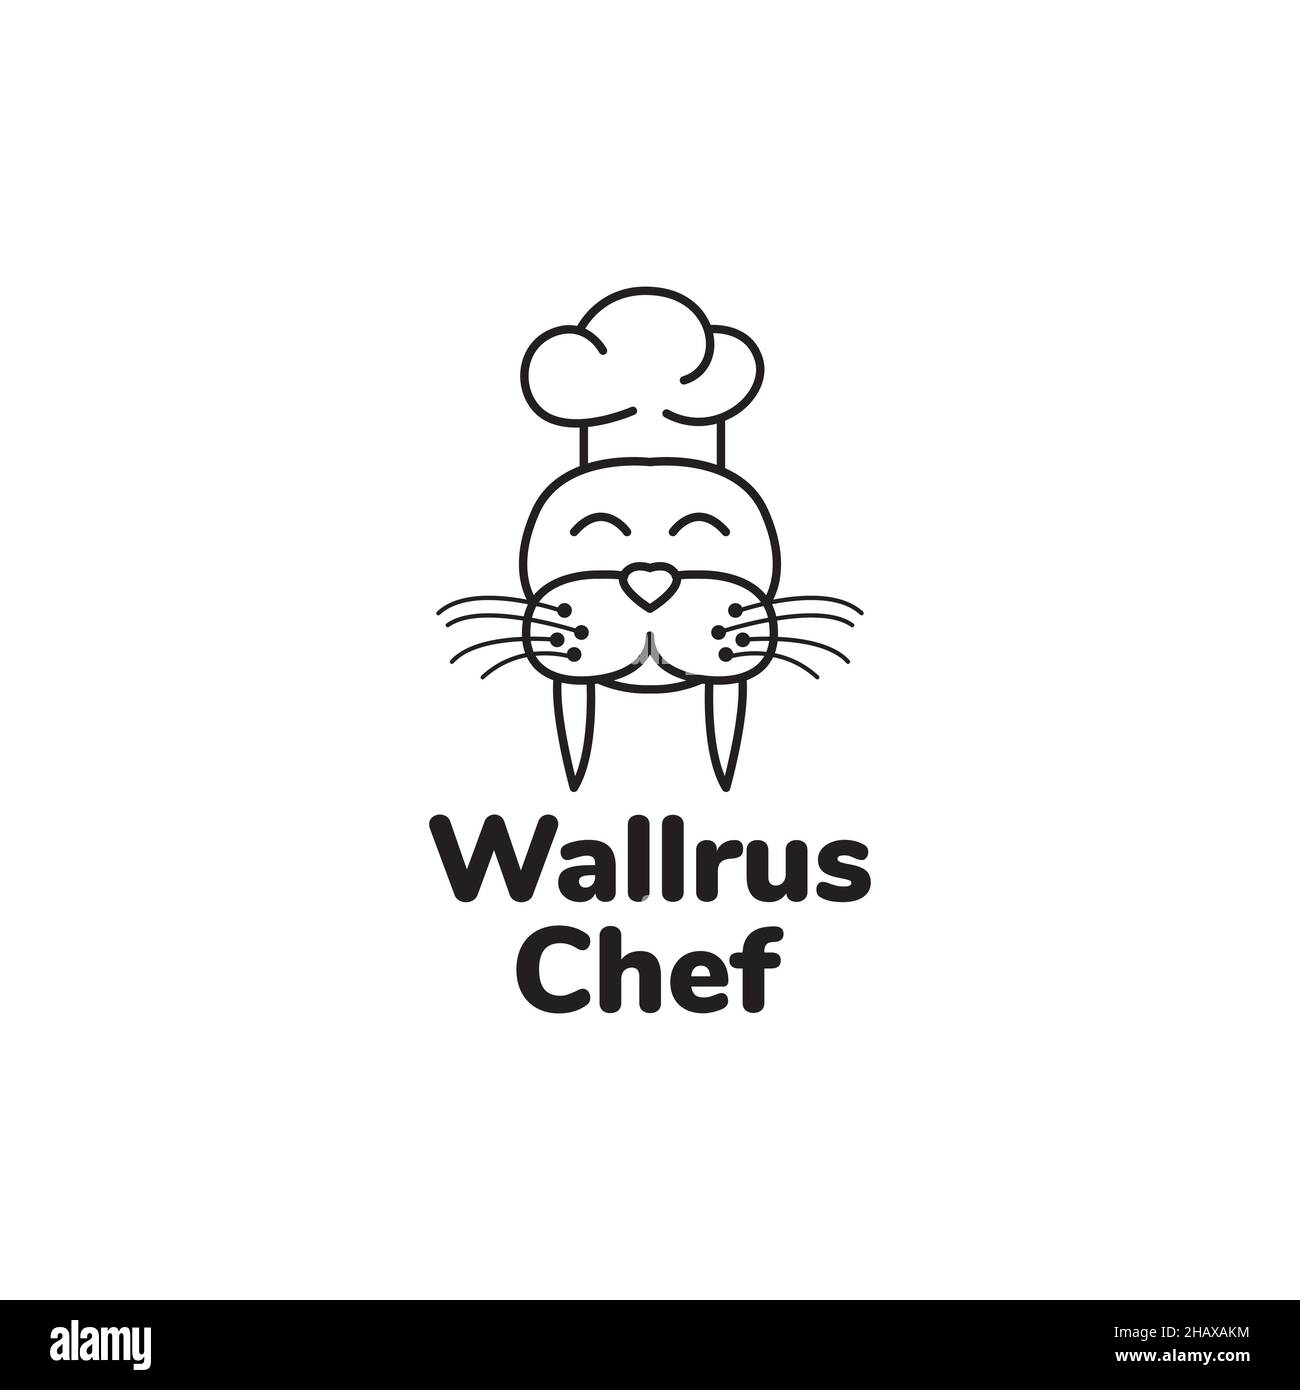 walrus chef cute logo symbol icon vector graphic design illustration idea creative Stock Vector